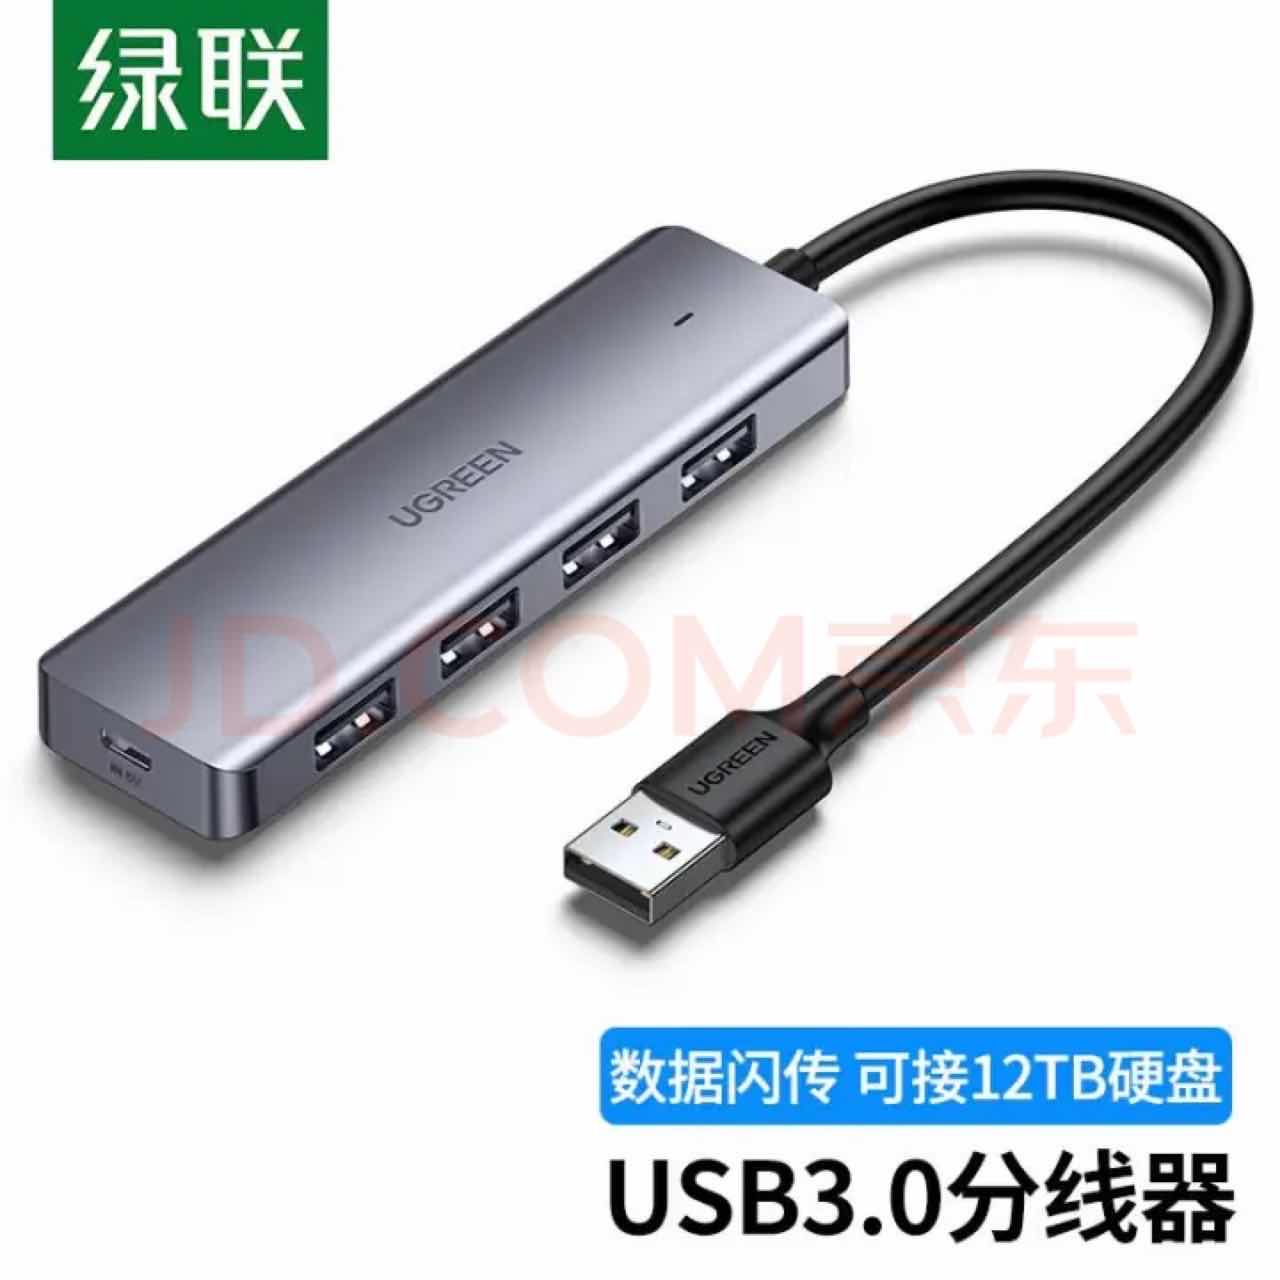 绿联 USB3.0 4口分线器15厘米,50985	